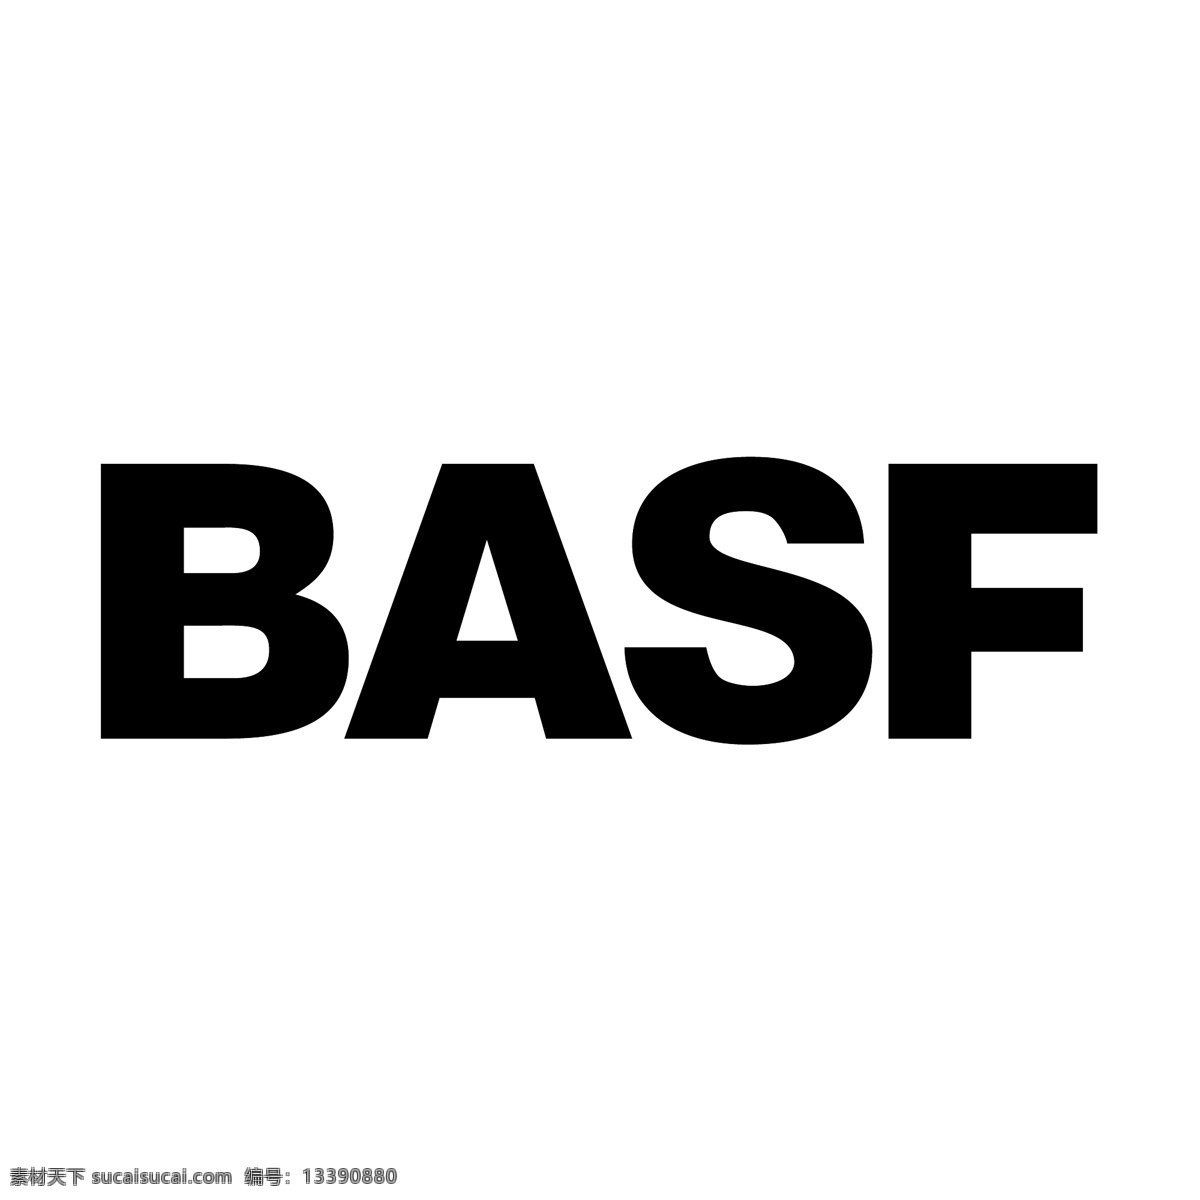 巴斯夫 免费 标志 标识 psd源文件 logo设计